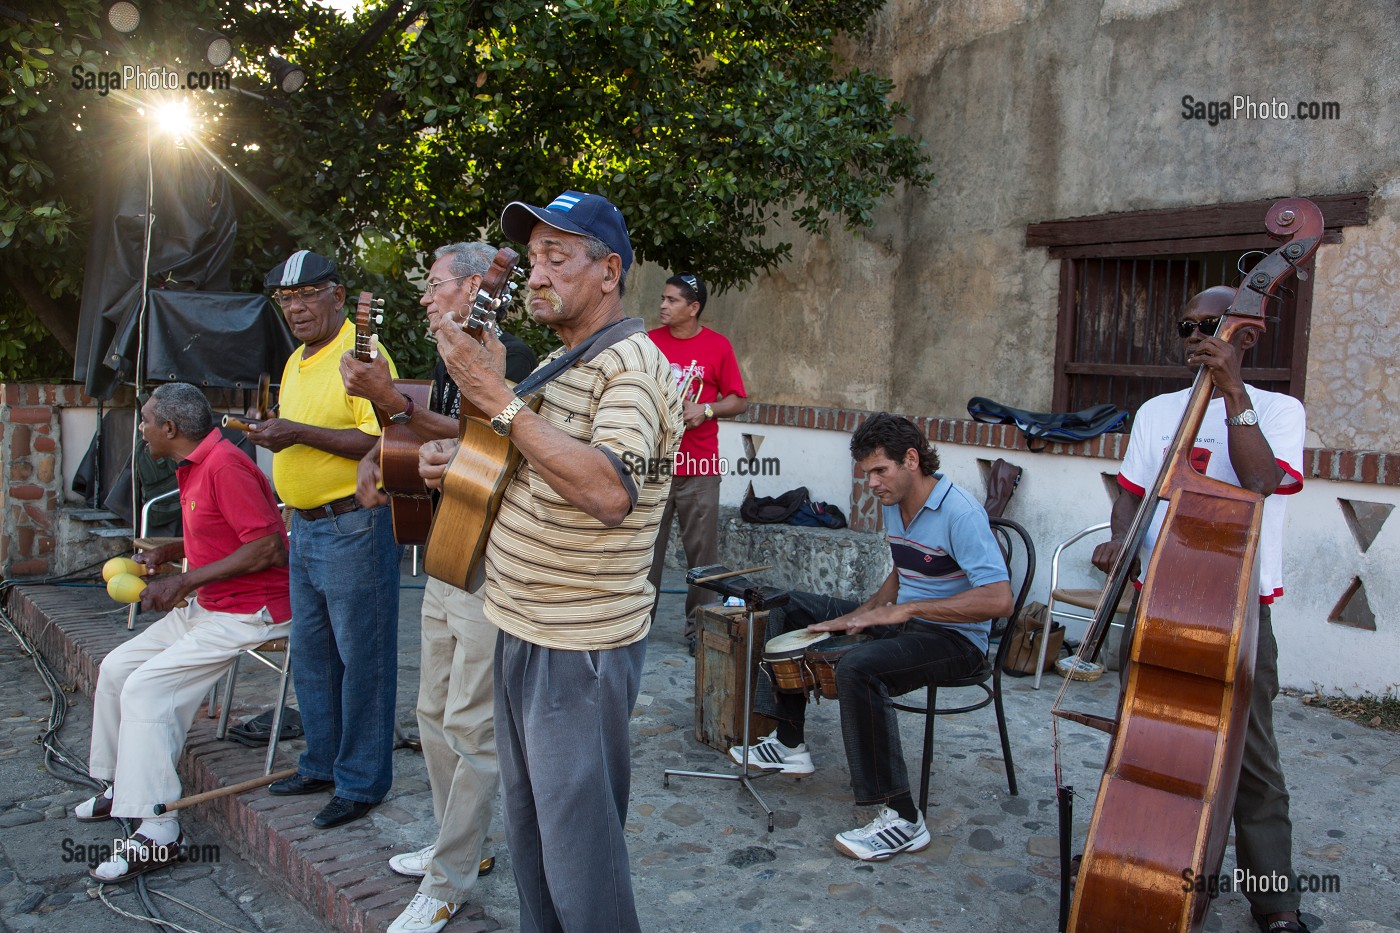 MUSICIENS CUBAINS SUR LA PLAZA MAYOR, TRINIDAD, CLASSEE AU PATRIMOINE MONDIAL DE L’HUMANITE PAR L’UNESCO, CUBA, CARAIBES 